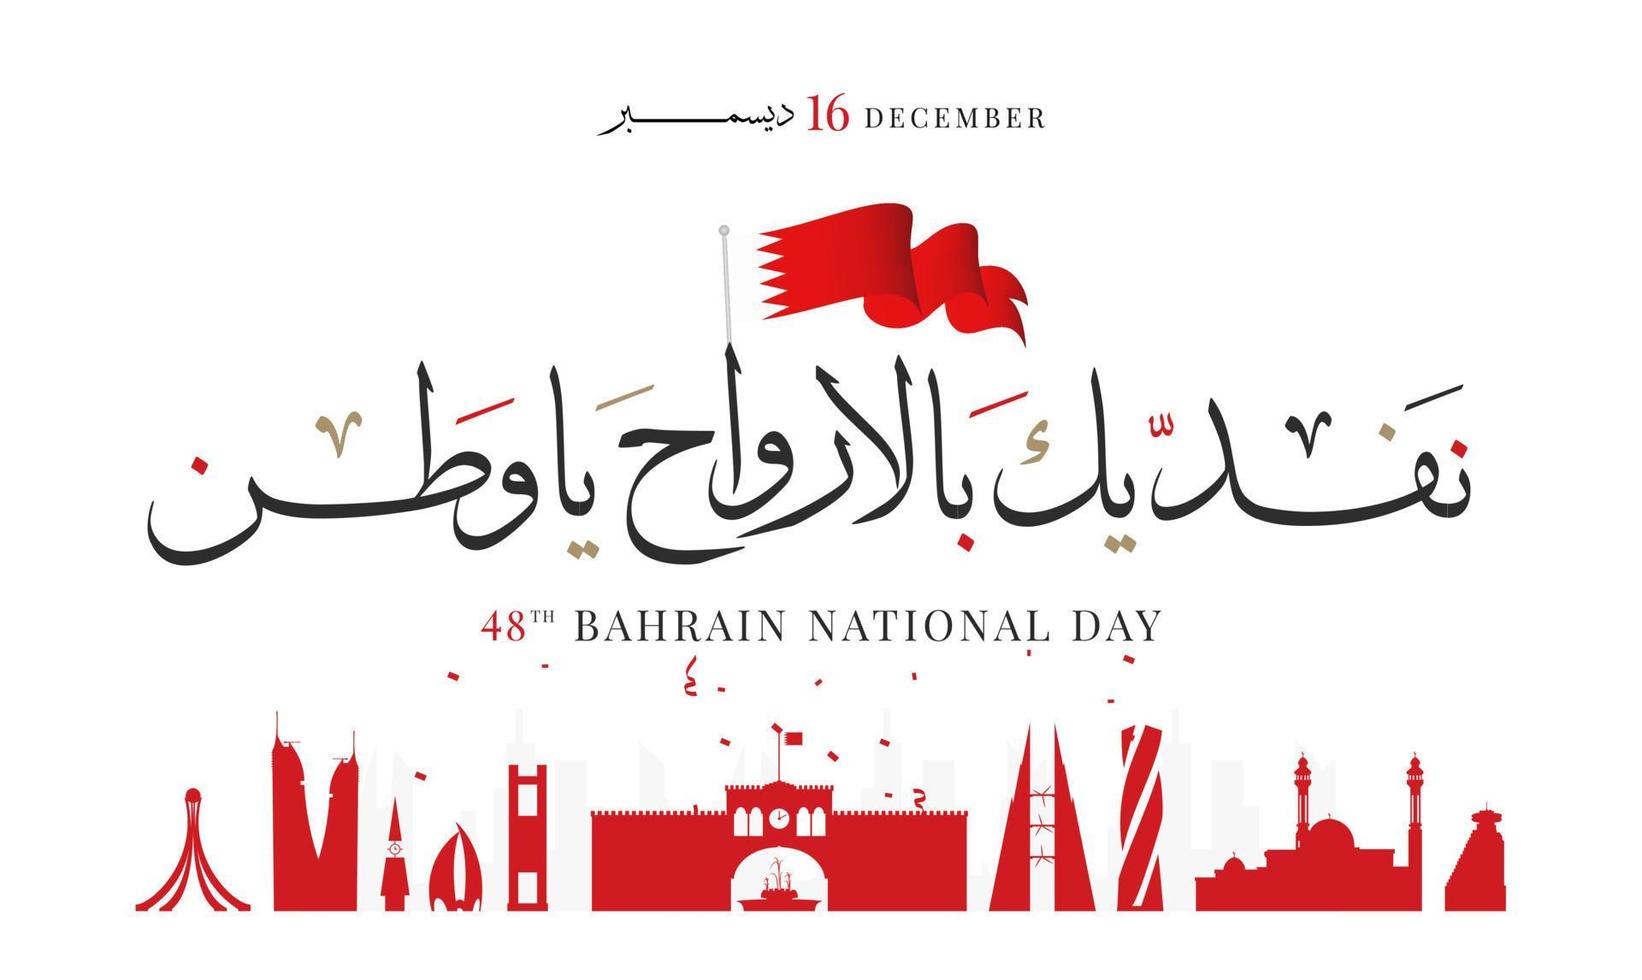 día nacional de bahrein, día de la independencia de bahrein, 16 de diciembre. caligrafía árabe vectorial vector